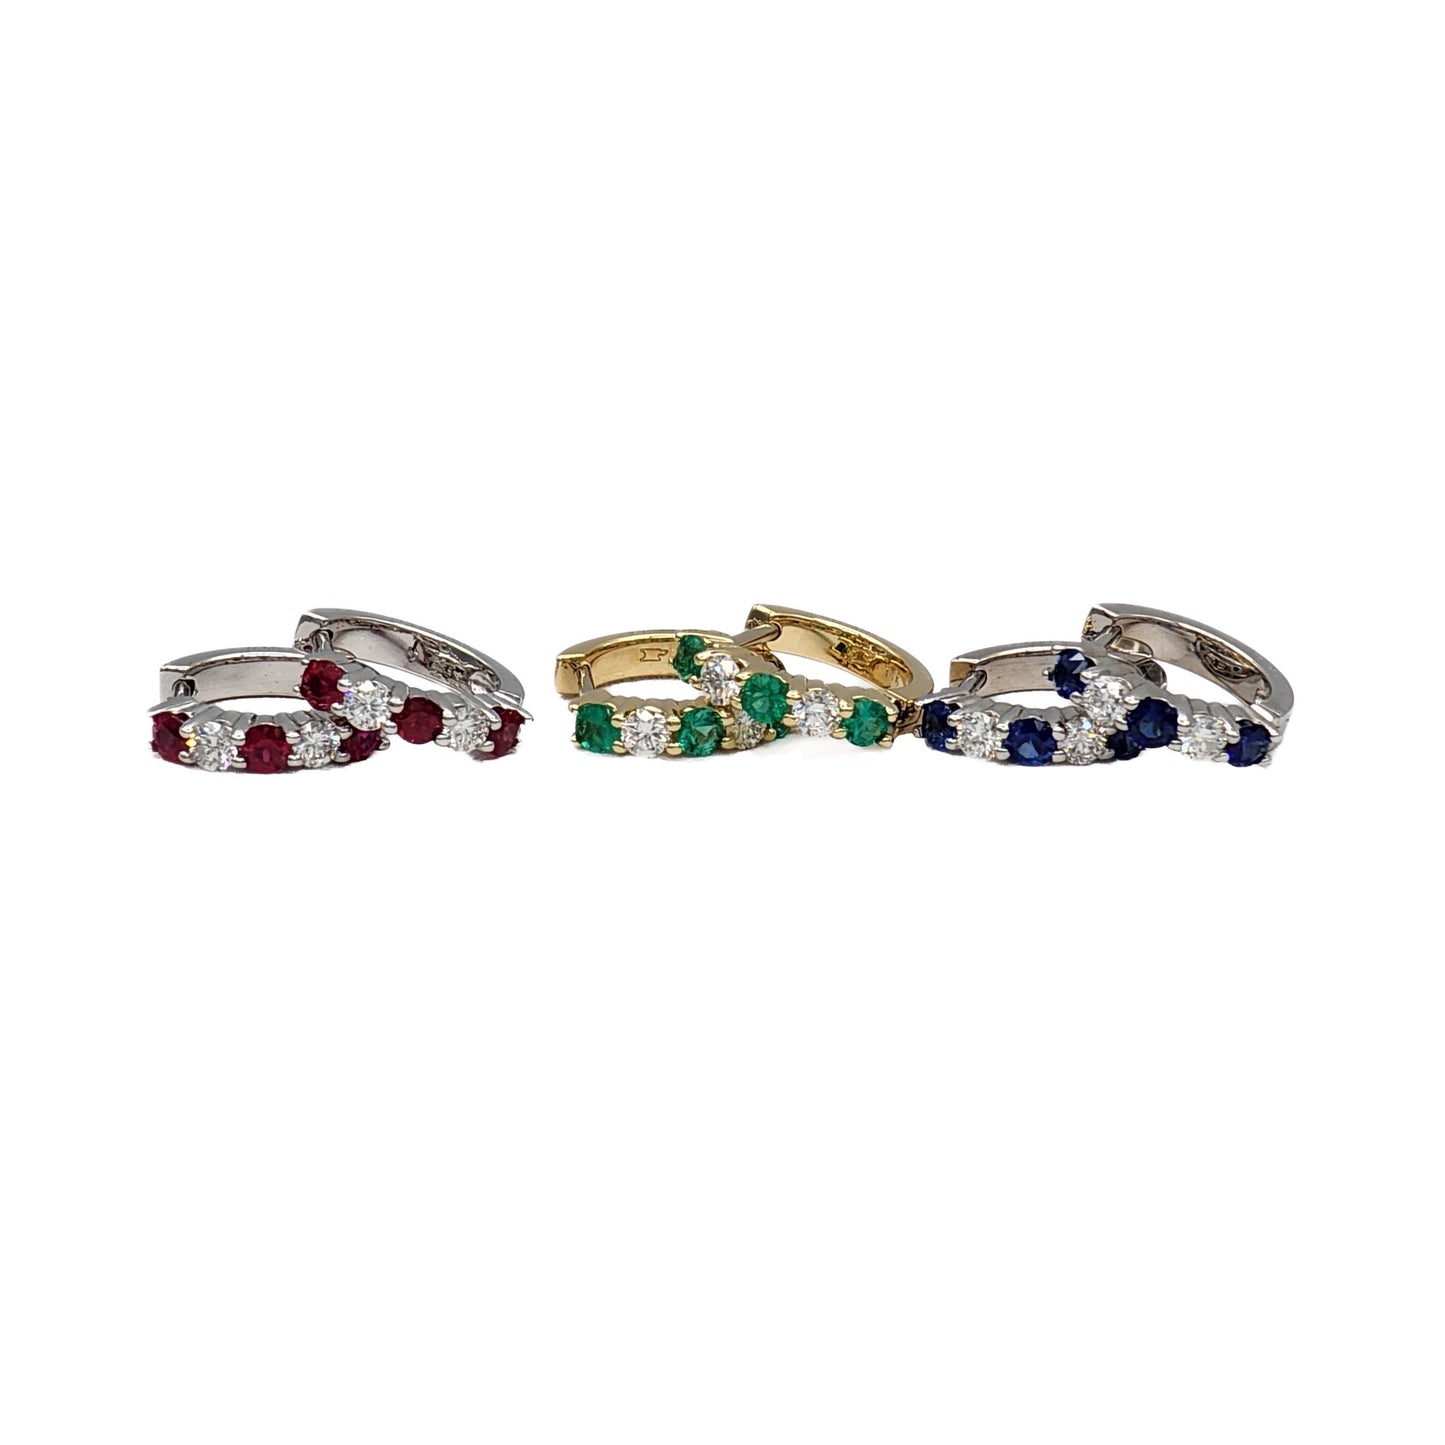 Ruby, Emerald, Sapphire, and Diamond Huggie Hoop Earrings in 14K